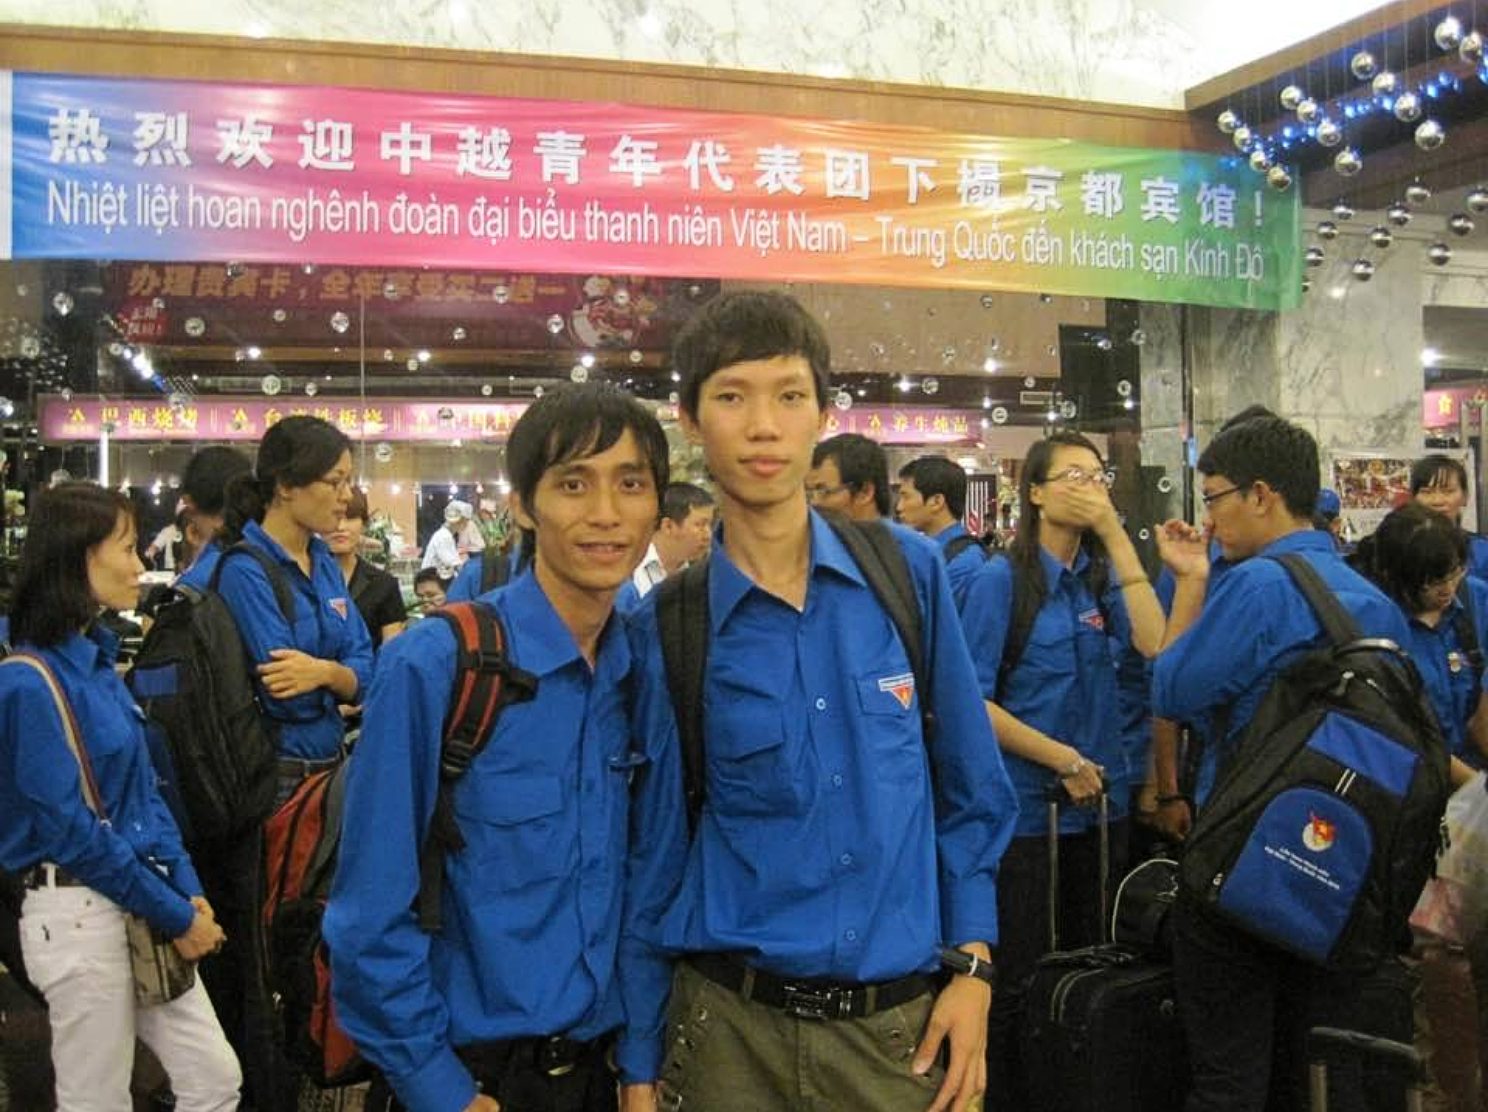 大學時期的曾偉林（身高最高者），曾被選為越南青年代表，赴中國參與中越建交60週年慶典。